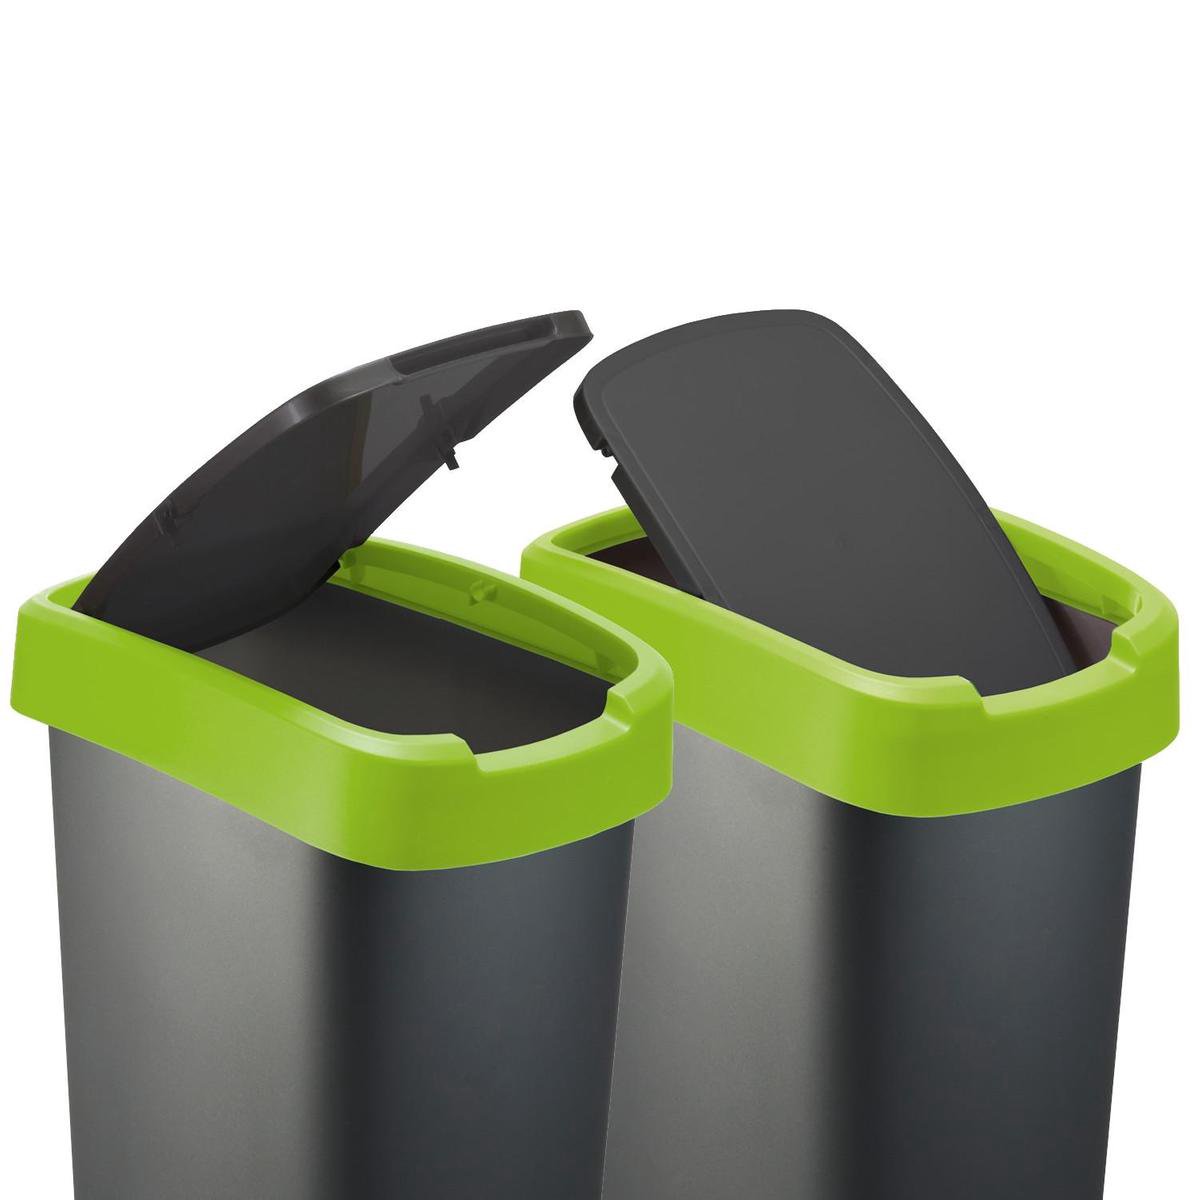 dodelijk woensdag Zeg opzij ROTHO afvalbak TWIST 10 liter groen | Prullenbak met schommel en  scharnierend deksel Groen | bol.com